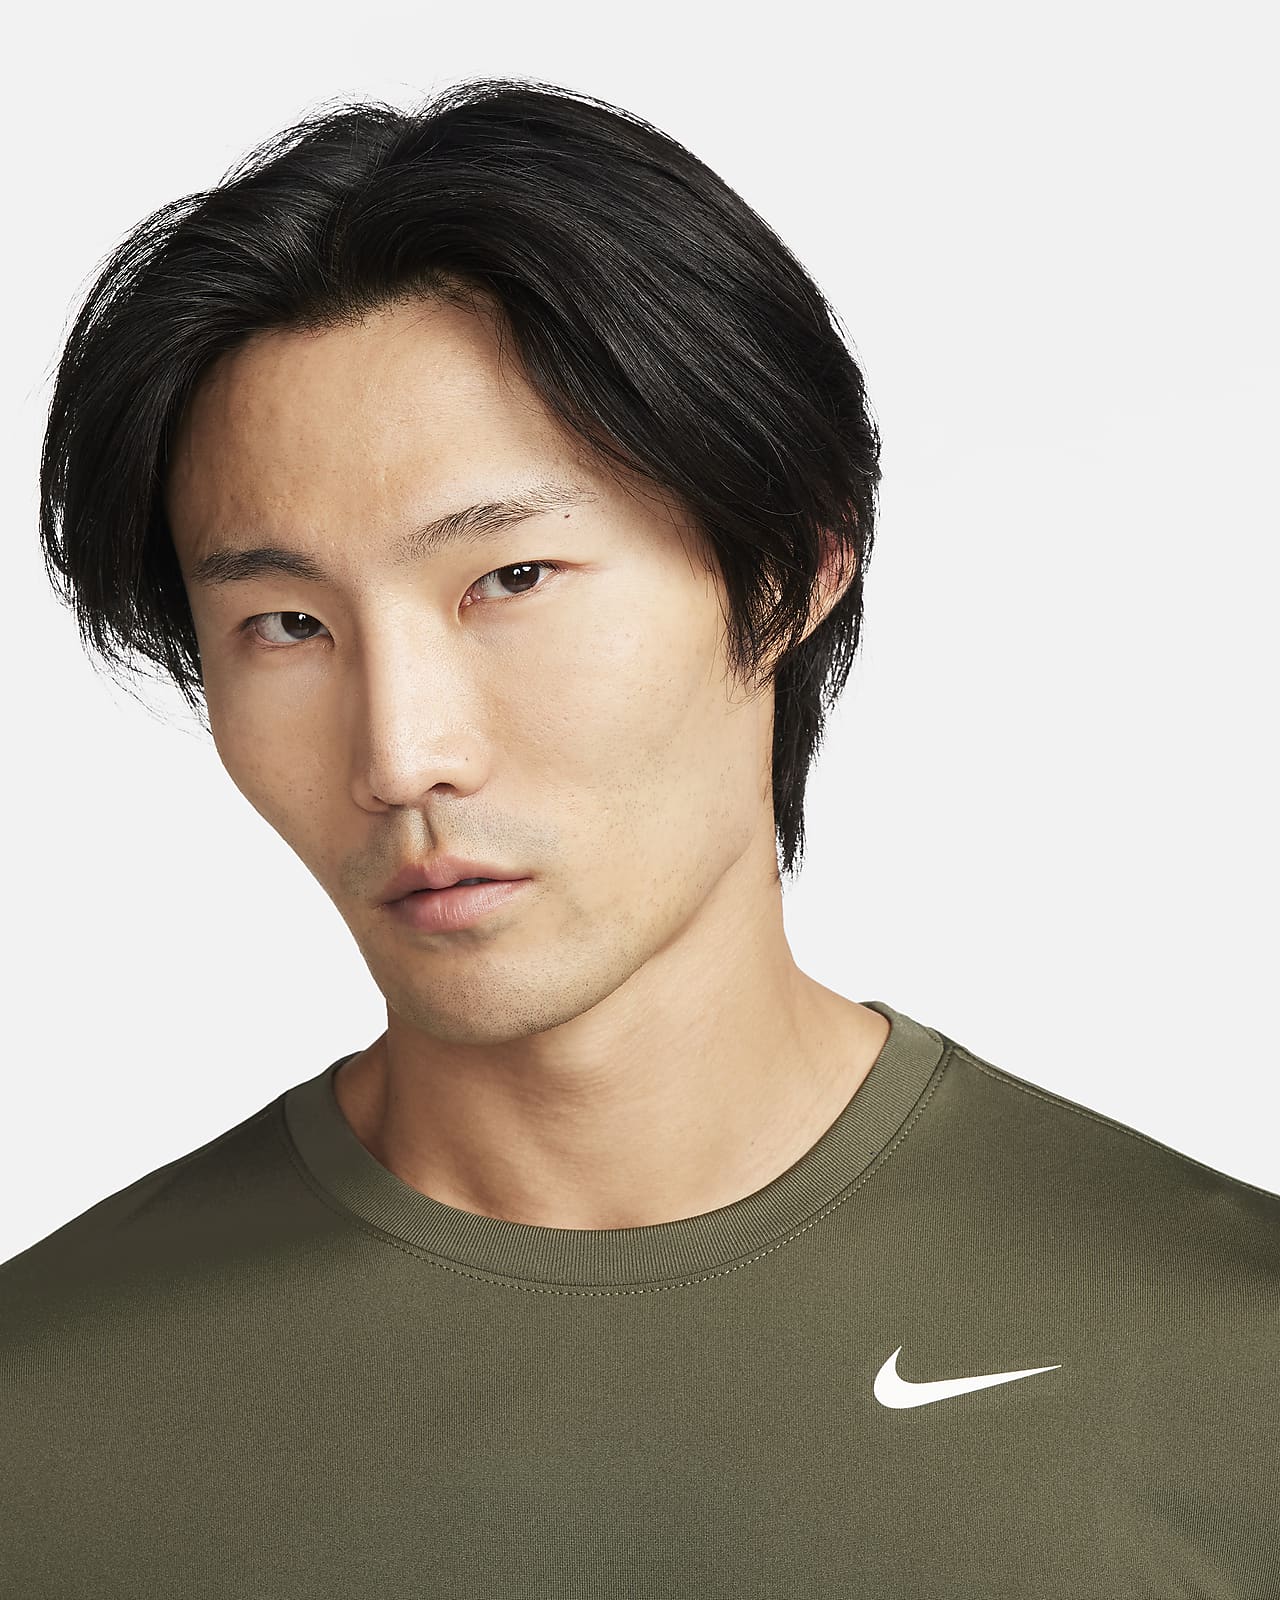 Nike Dri-FIT Legend Men's Fitness T-Shirt.